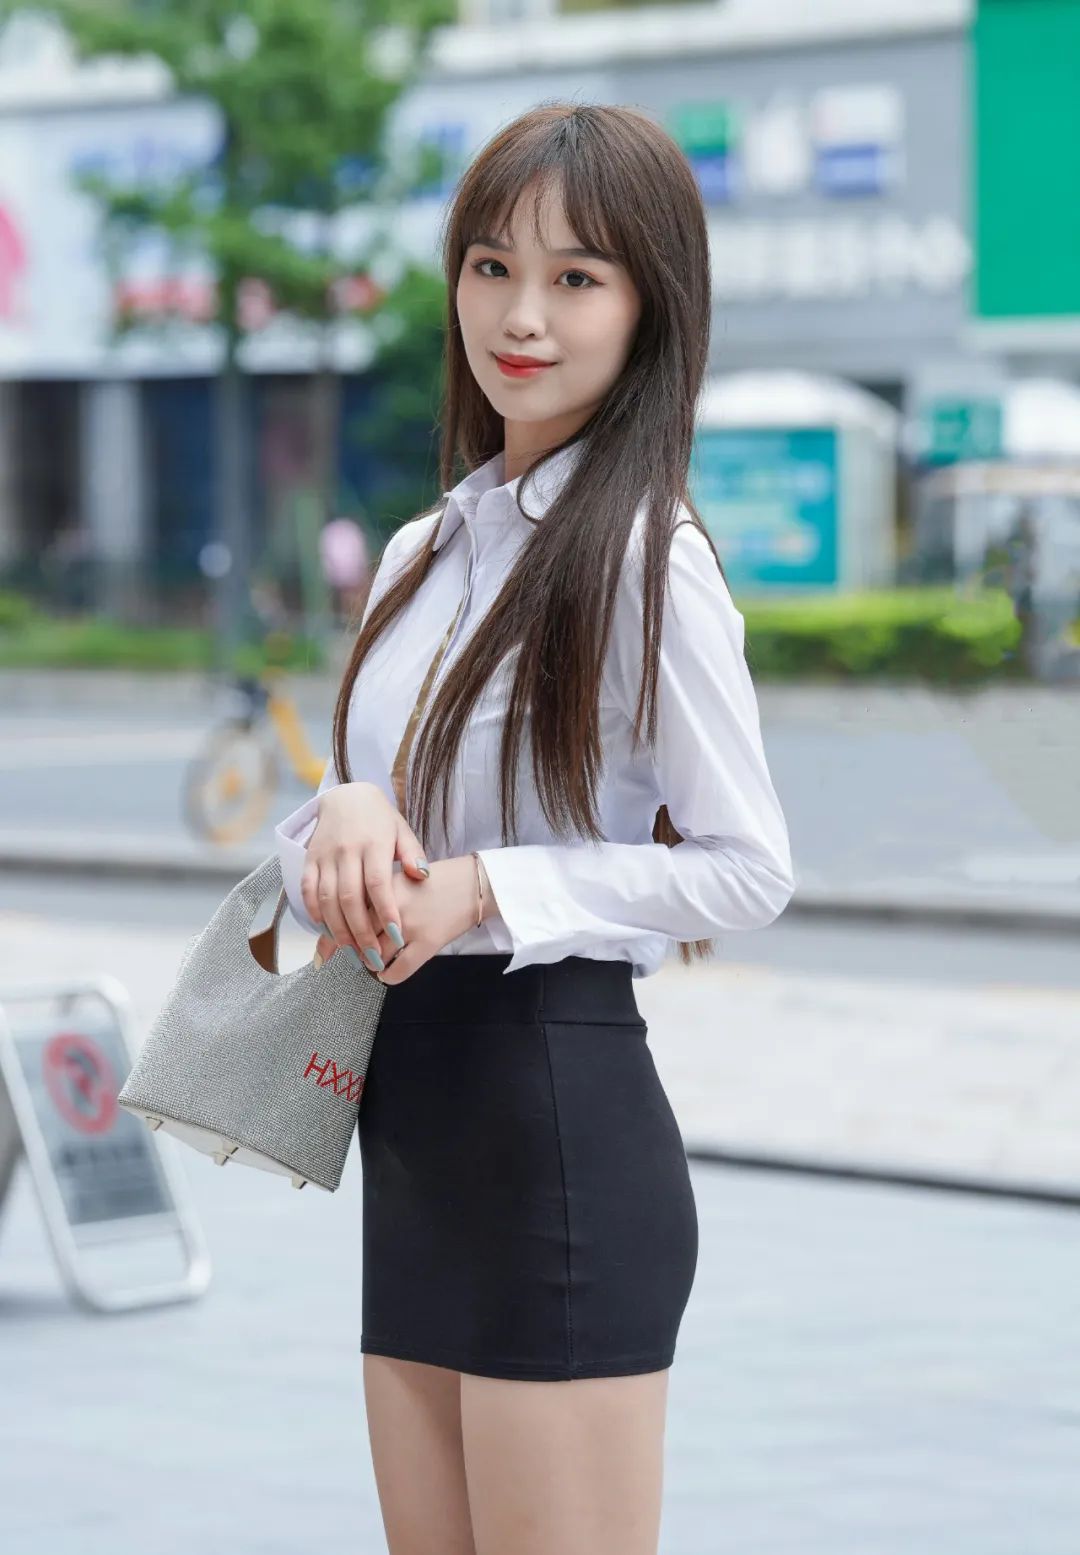 穿短黑裙白衬衫高跟的时尚大长腿美女街拍图片